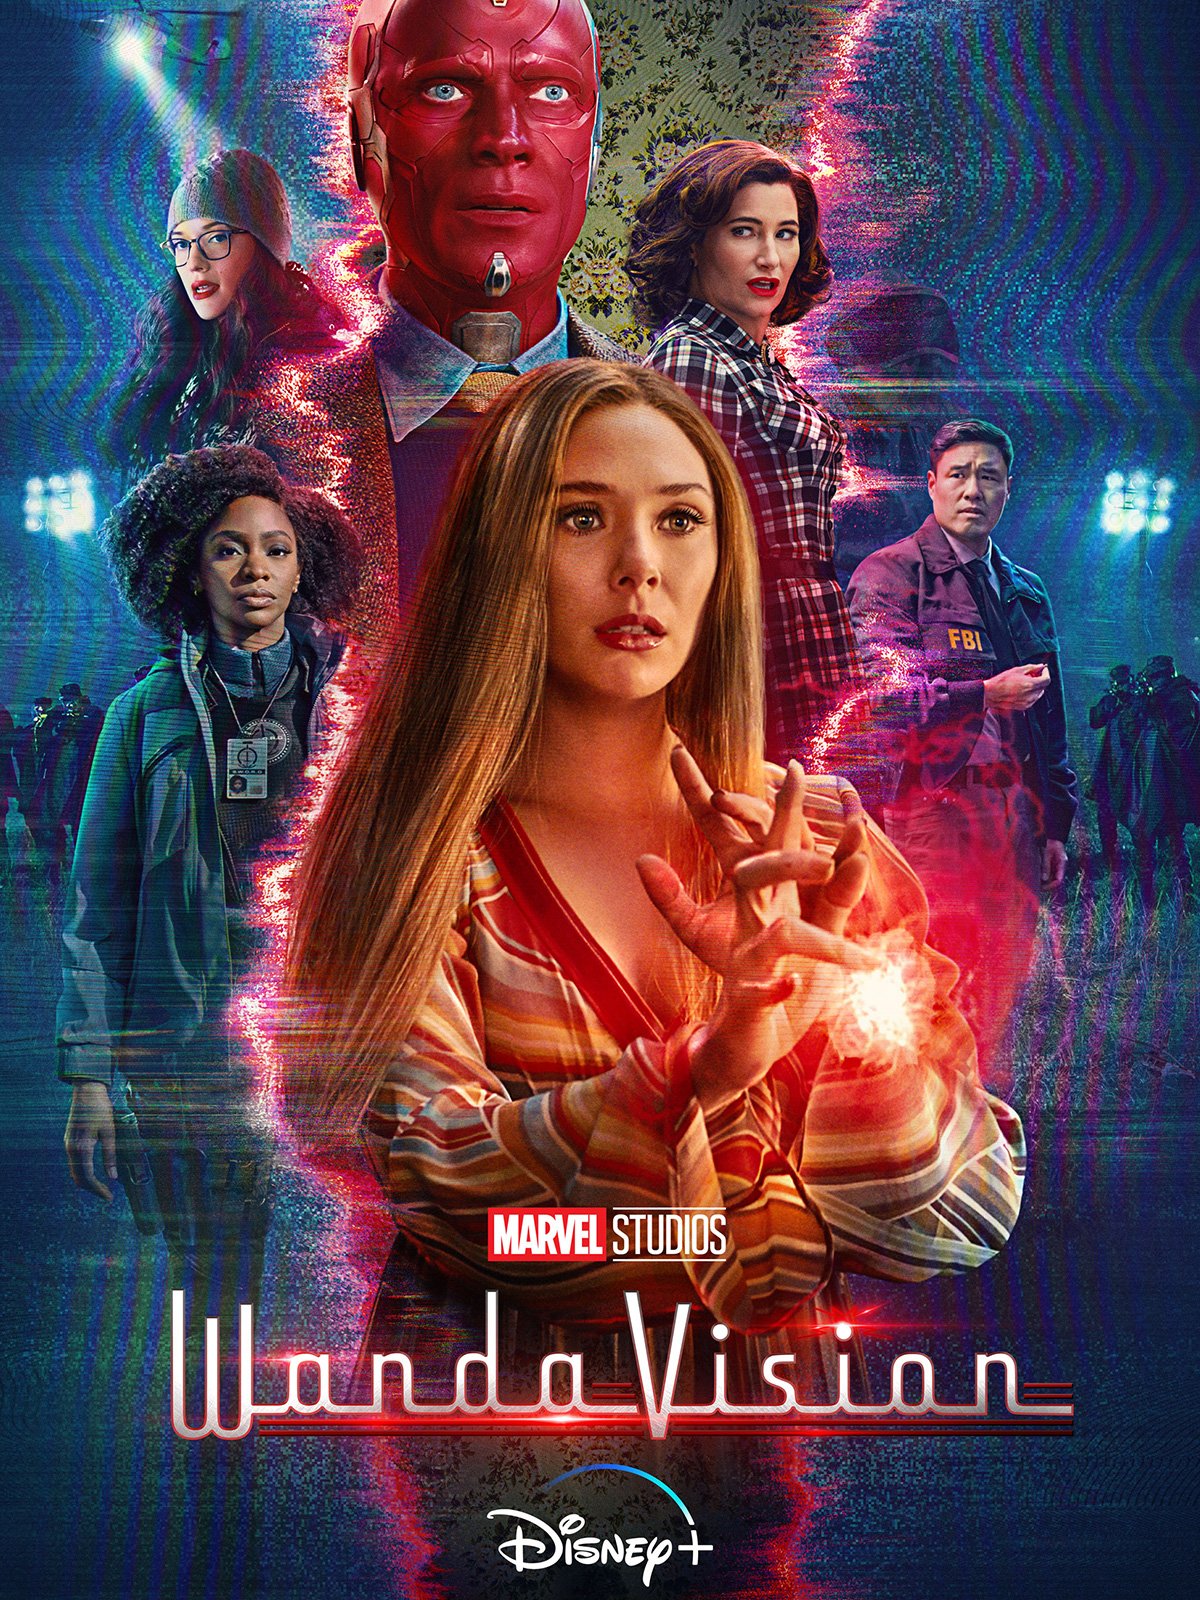 WandaVision : Affiche